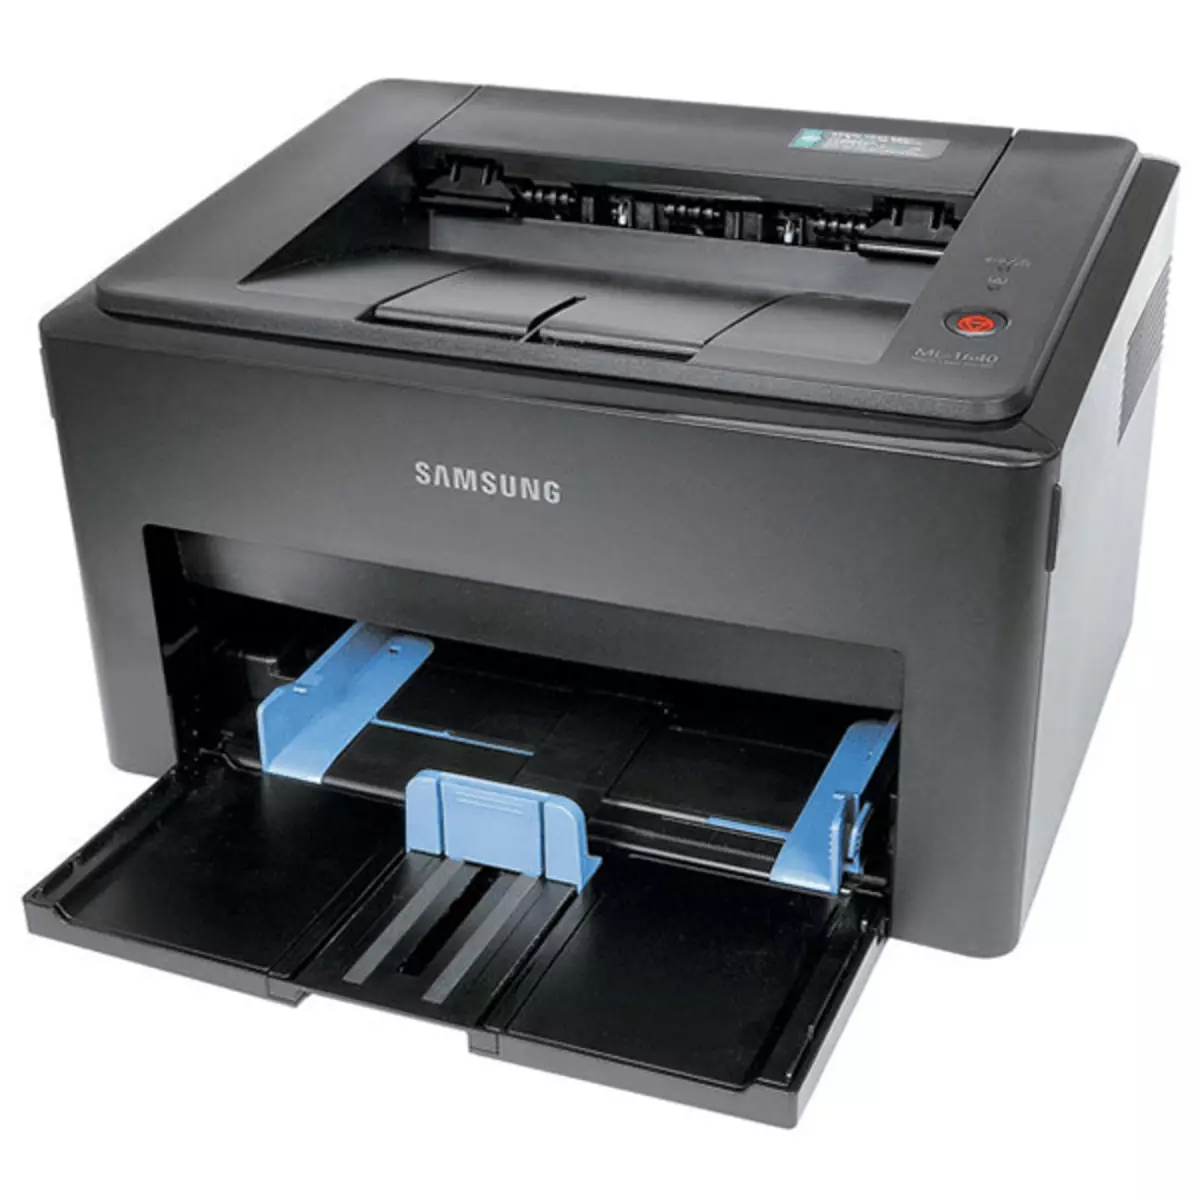 Изтеглете драйвер за Samsung ML 1640 принтер